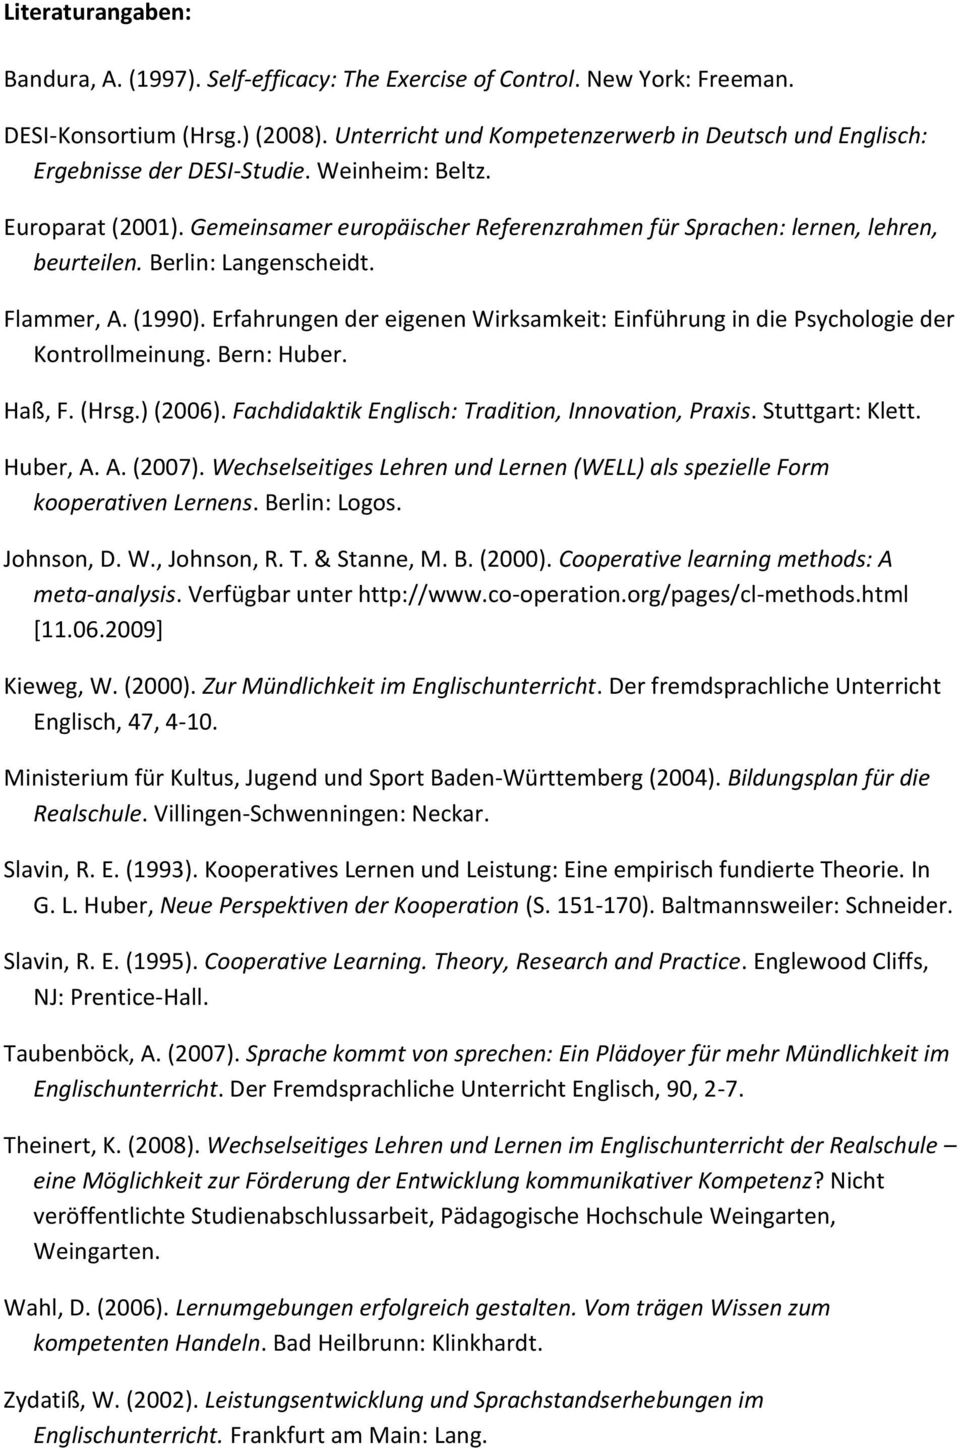 Berlin: Langenscheidt. Flammer, A. (1990). Erfahrungen der eigenen Wirksamkeit: Einführung in die Psychologie der Kontrollmeinung. Bern: Huber. Haß, F. (Hrsg.) (2006).